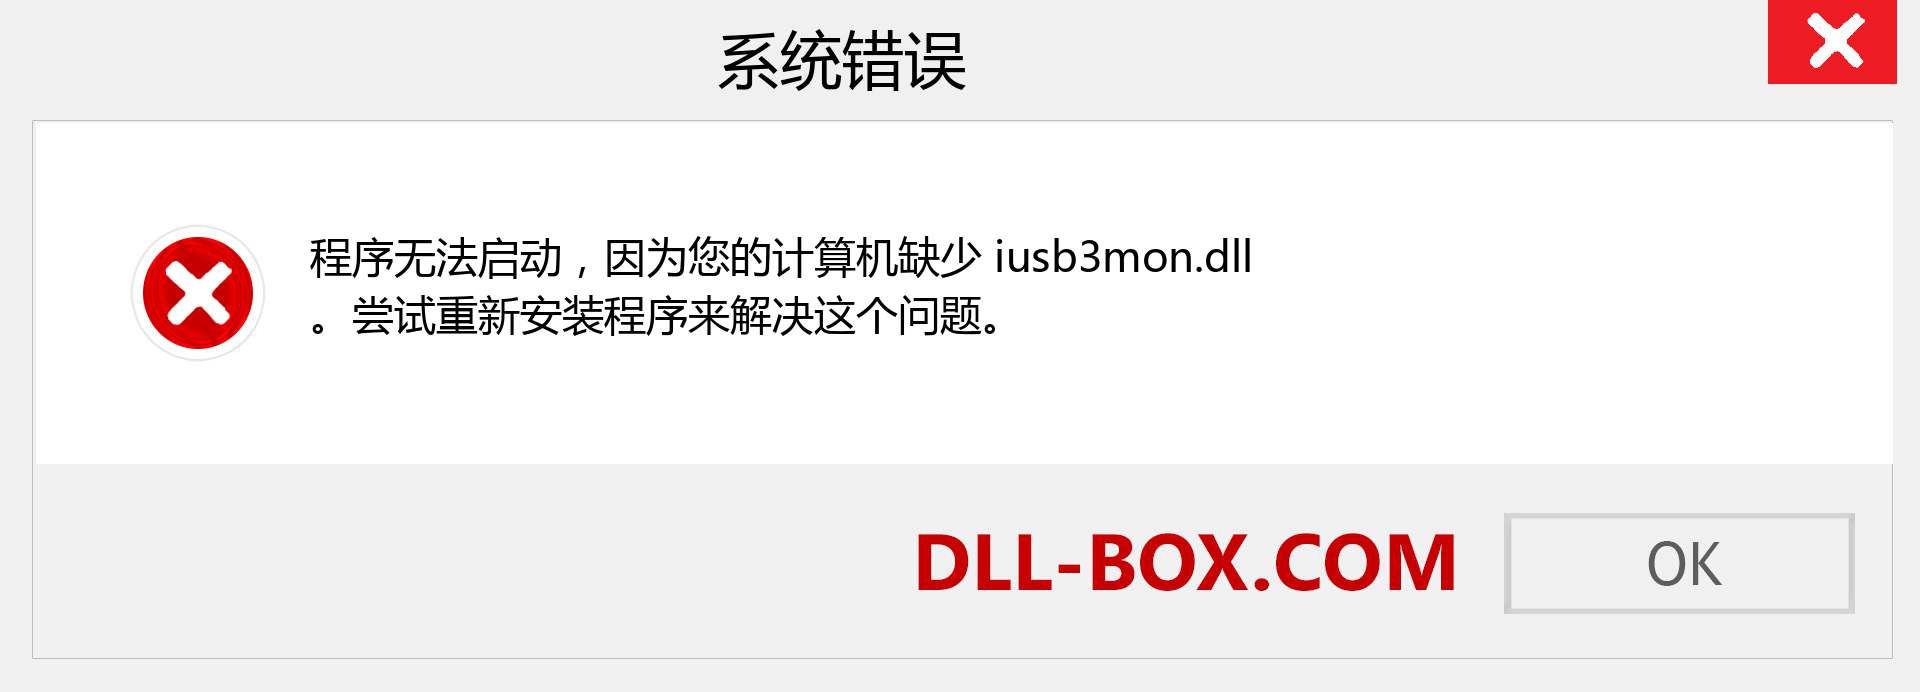 iusb3mon.dll 文件丢失？。 适用于 Windows 7、8、10 的下载 - 修复 Windows、照片、图像上的 iusb3mon dll 丢失错误